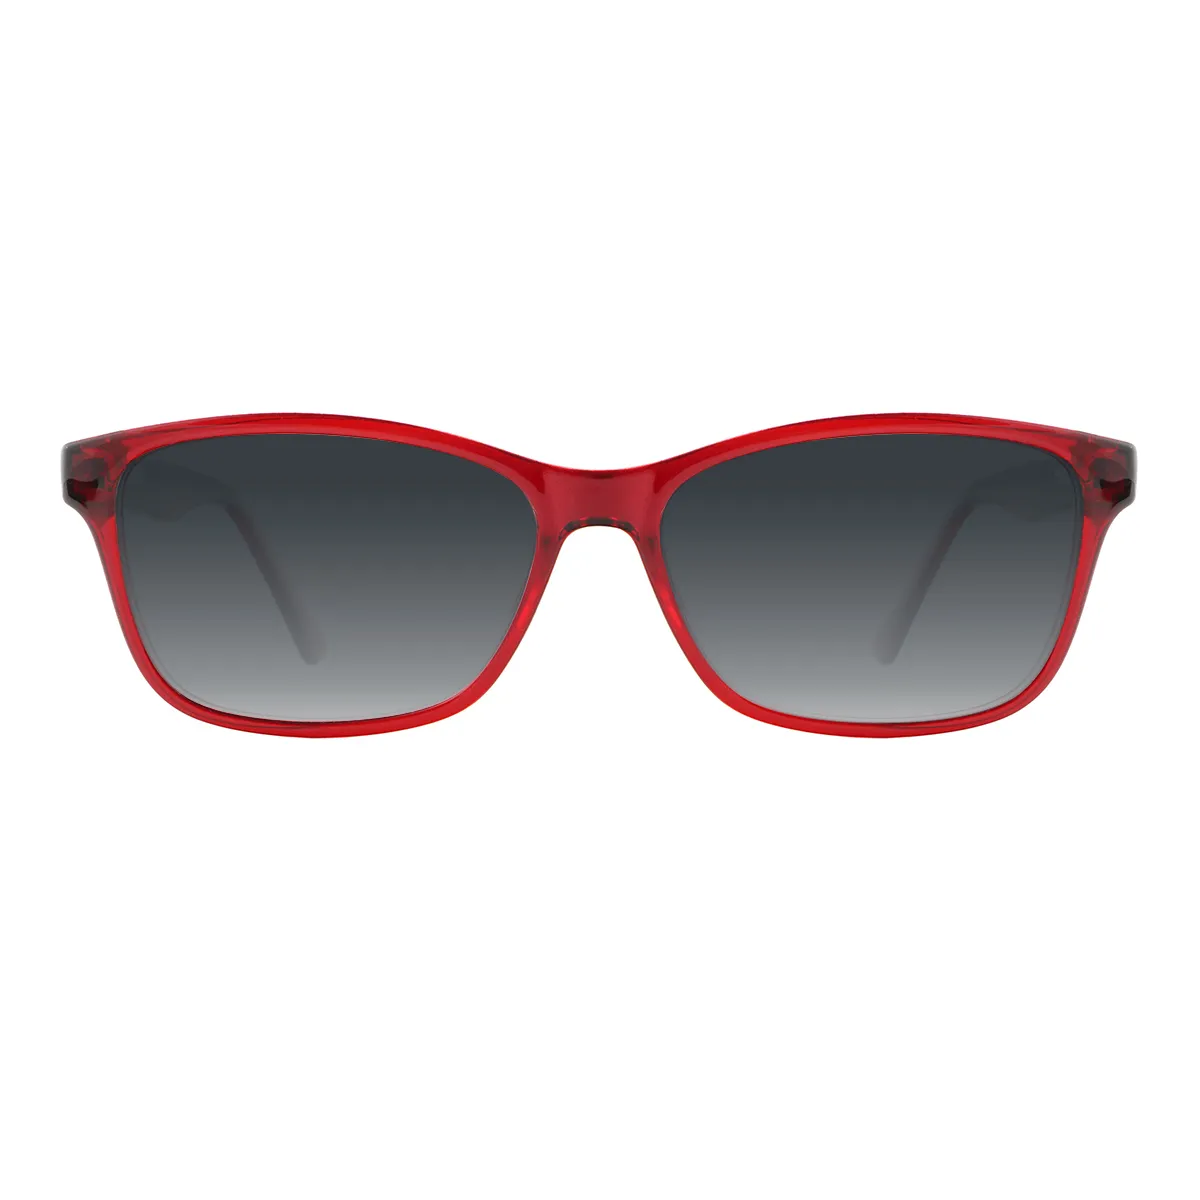 Business Rectangle Black  Sunglasses for Women & Men